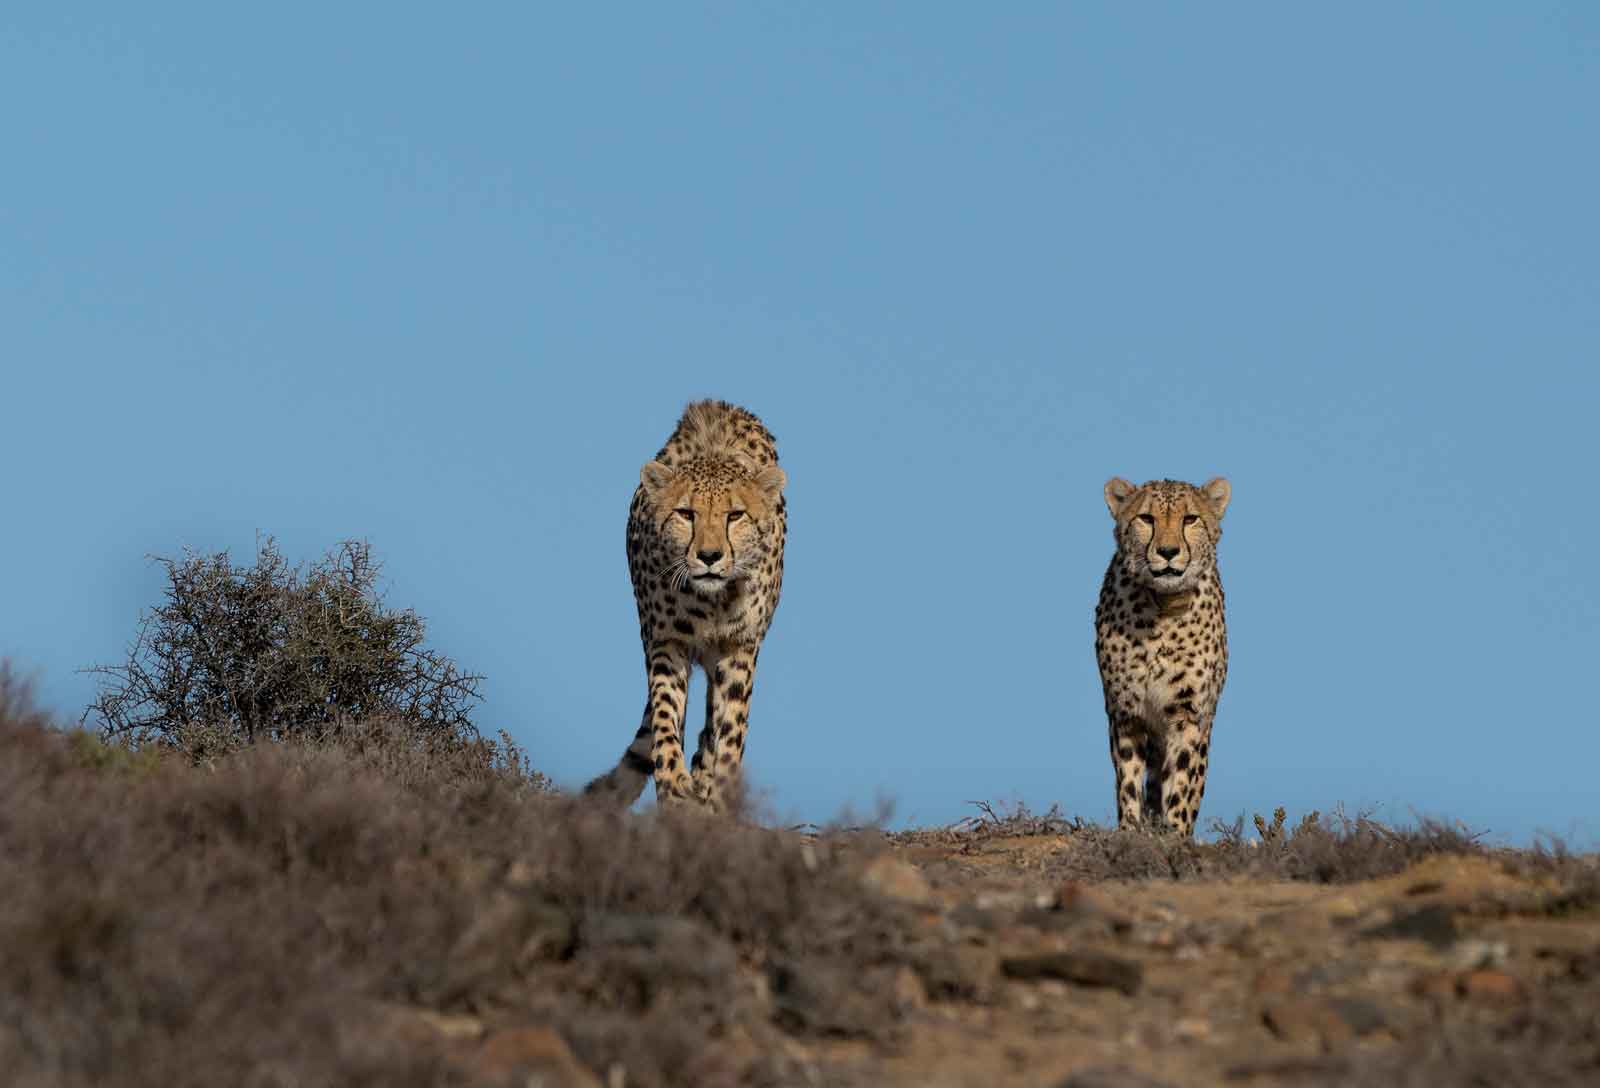 Cheetah at Roam Private Game Reserve